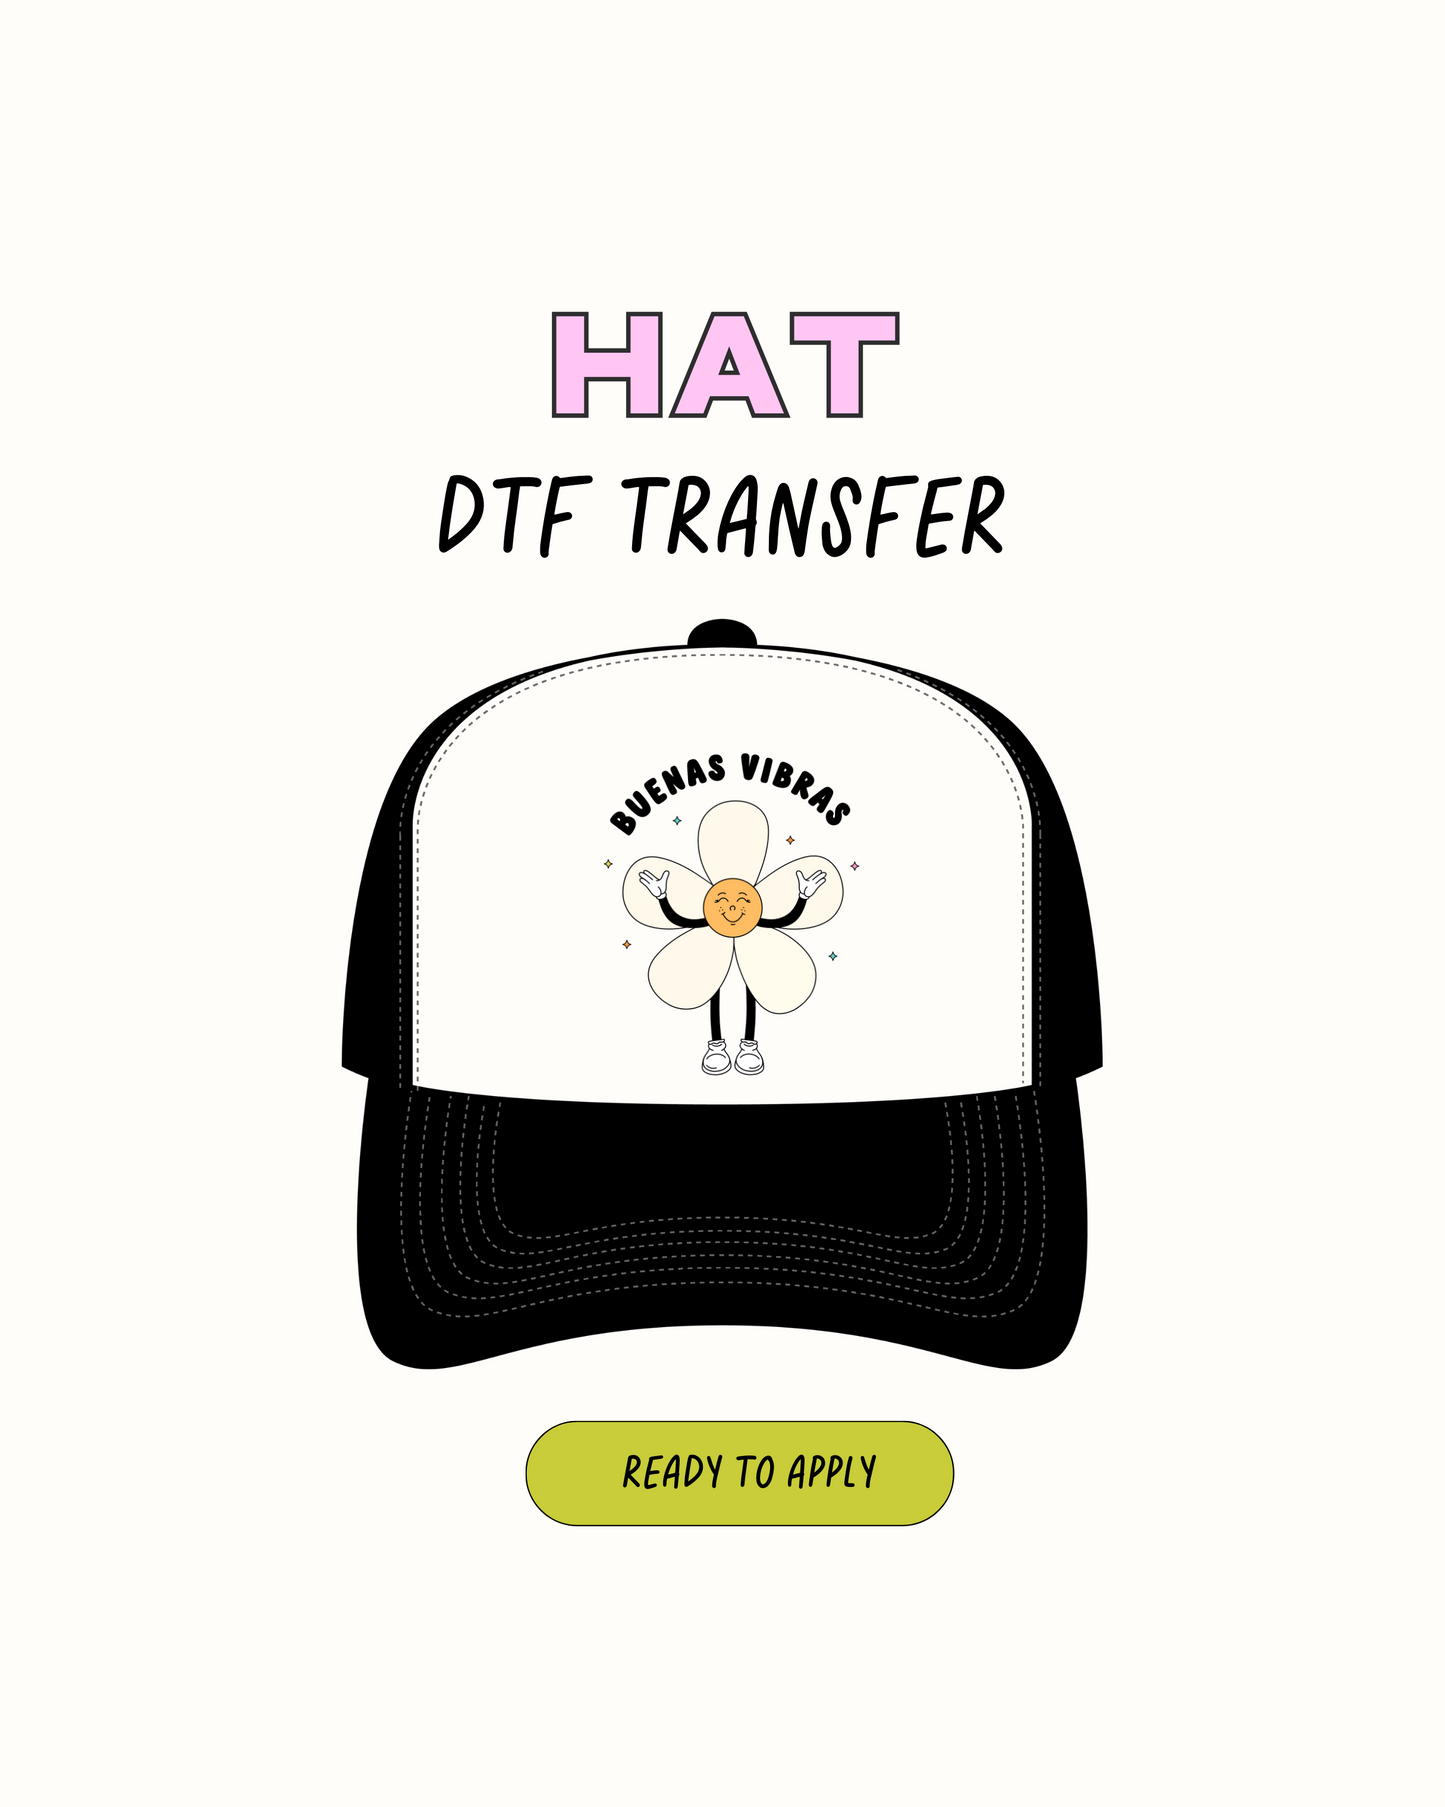 Buenas vibras - DTF Hat Transfers 